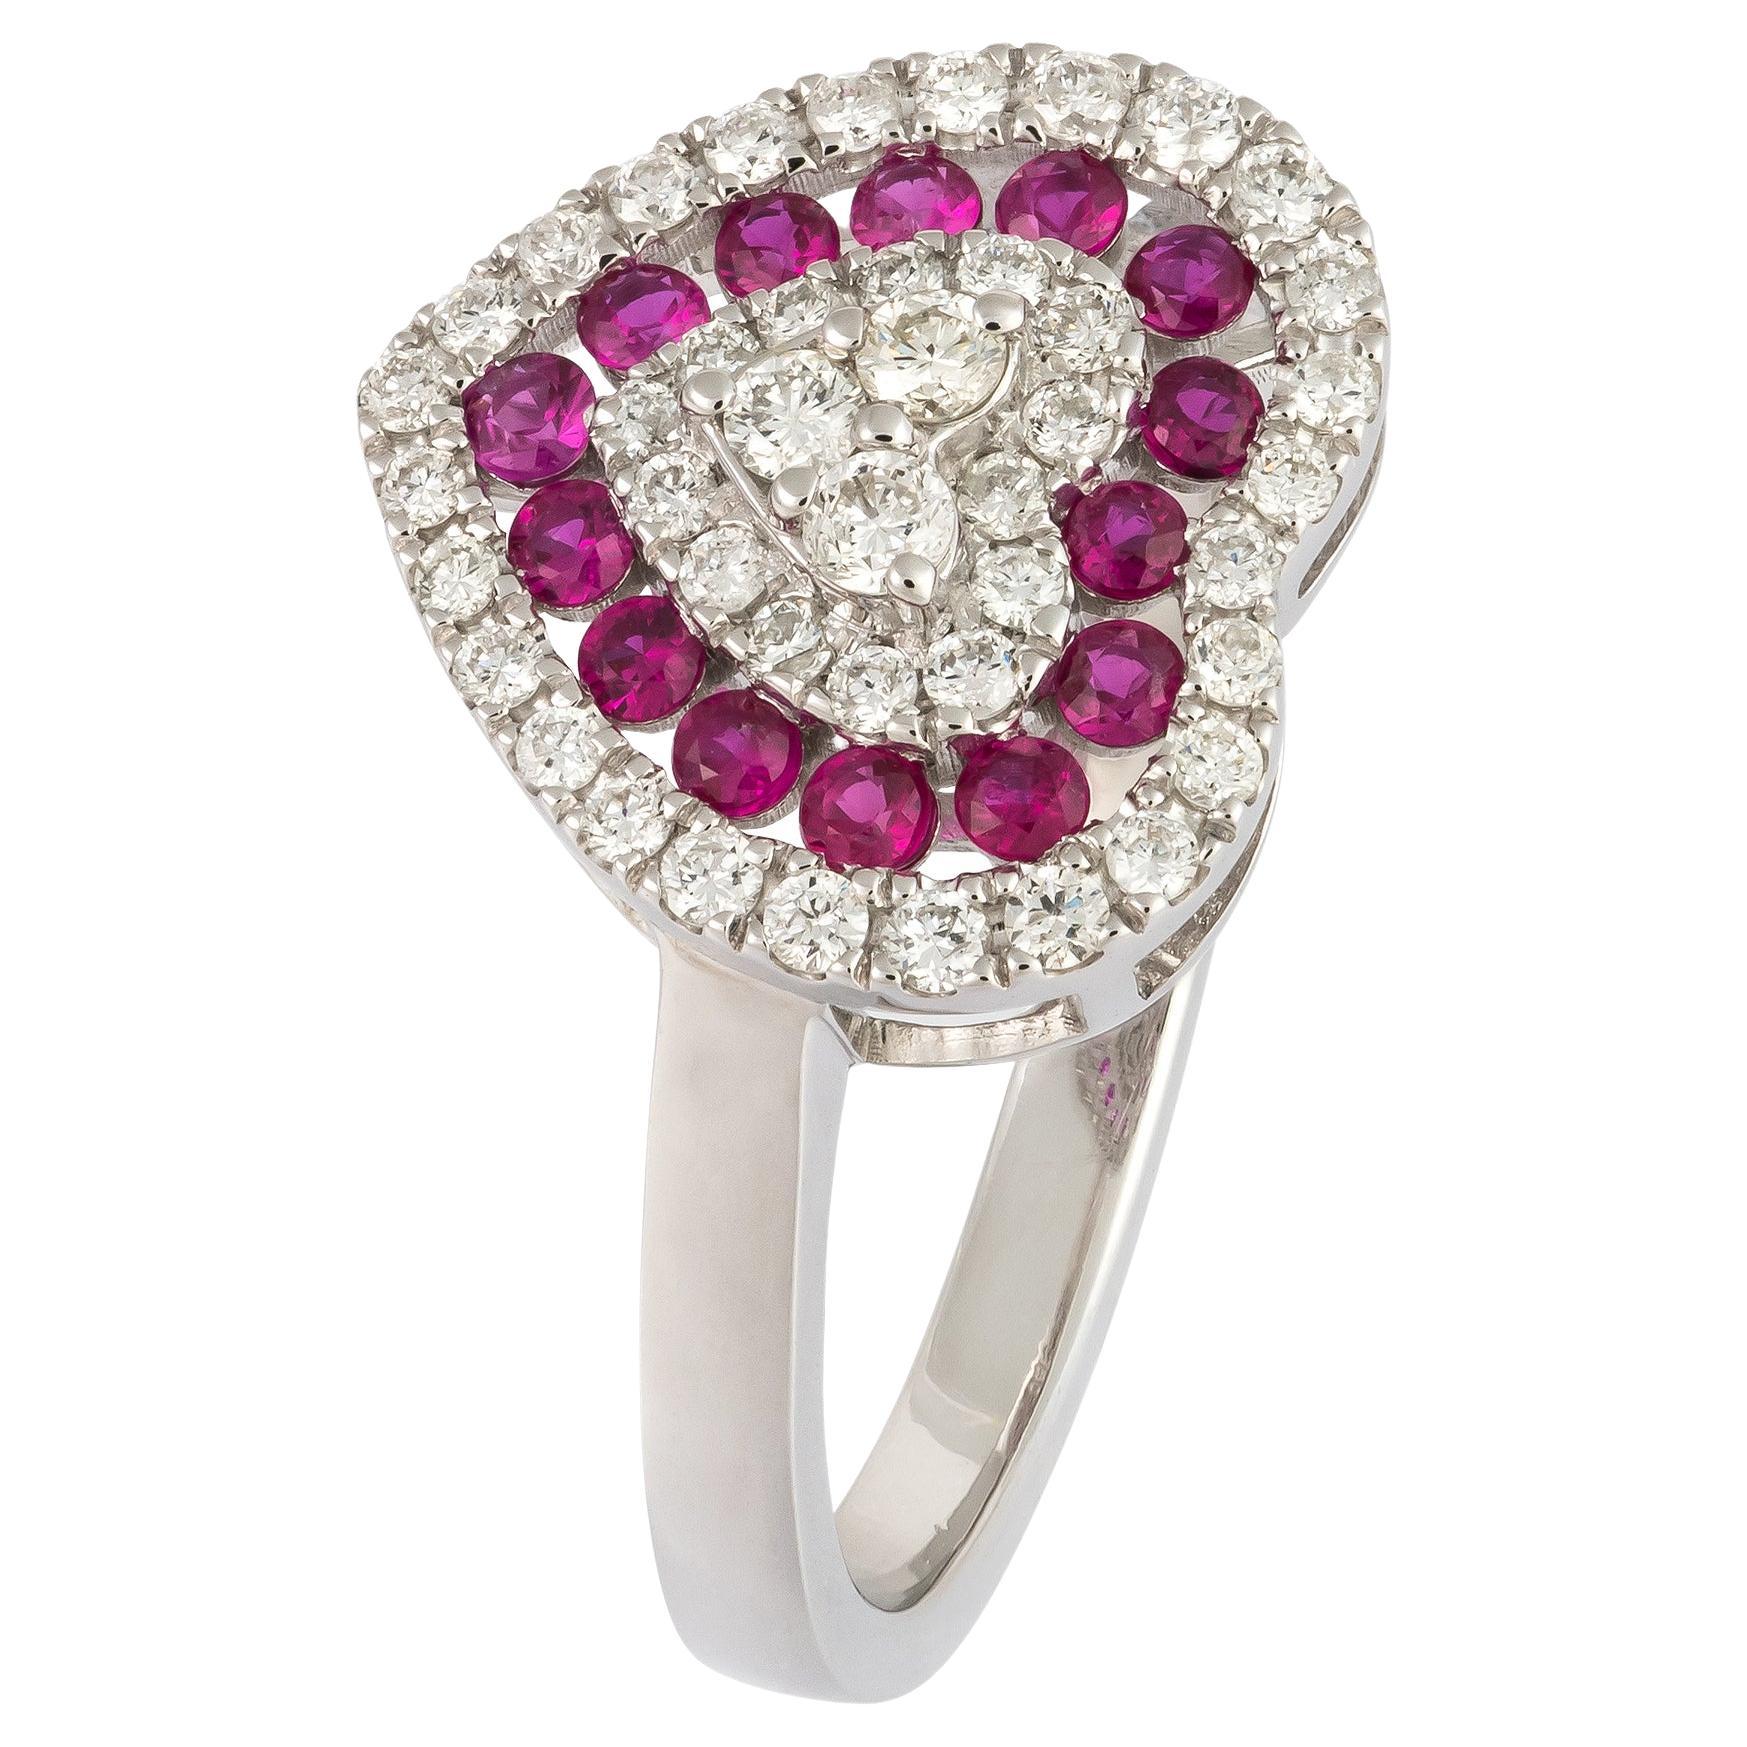 Impressive Ruby White 18K Gold White Diamond Ring for Her